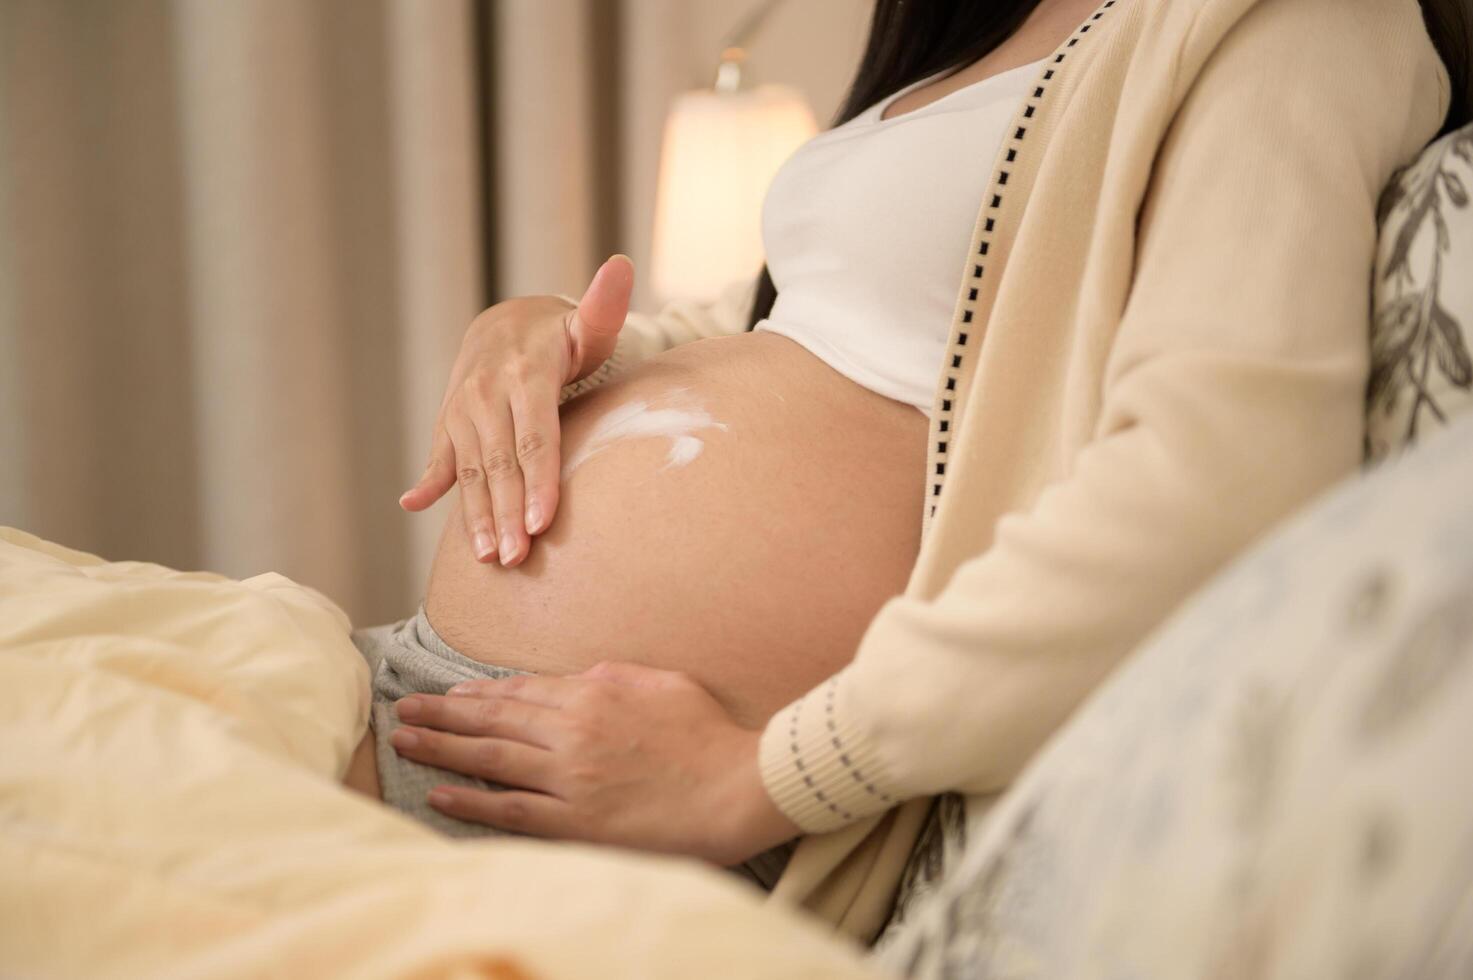 hermosa embarazada mujer aplicando hidratante, tramo marca crema en barriga, Fertilidad esterilidad tratamiento, FIV, futuro maternidad concepto foto